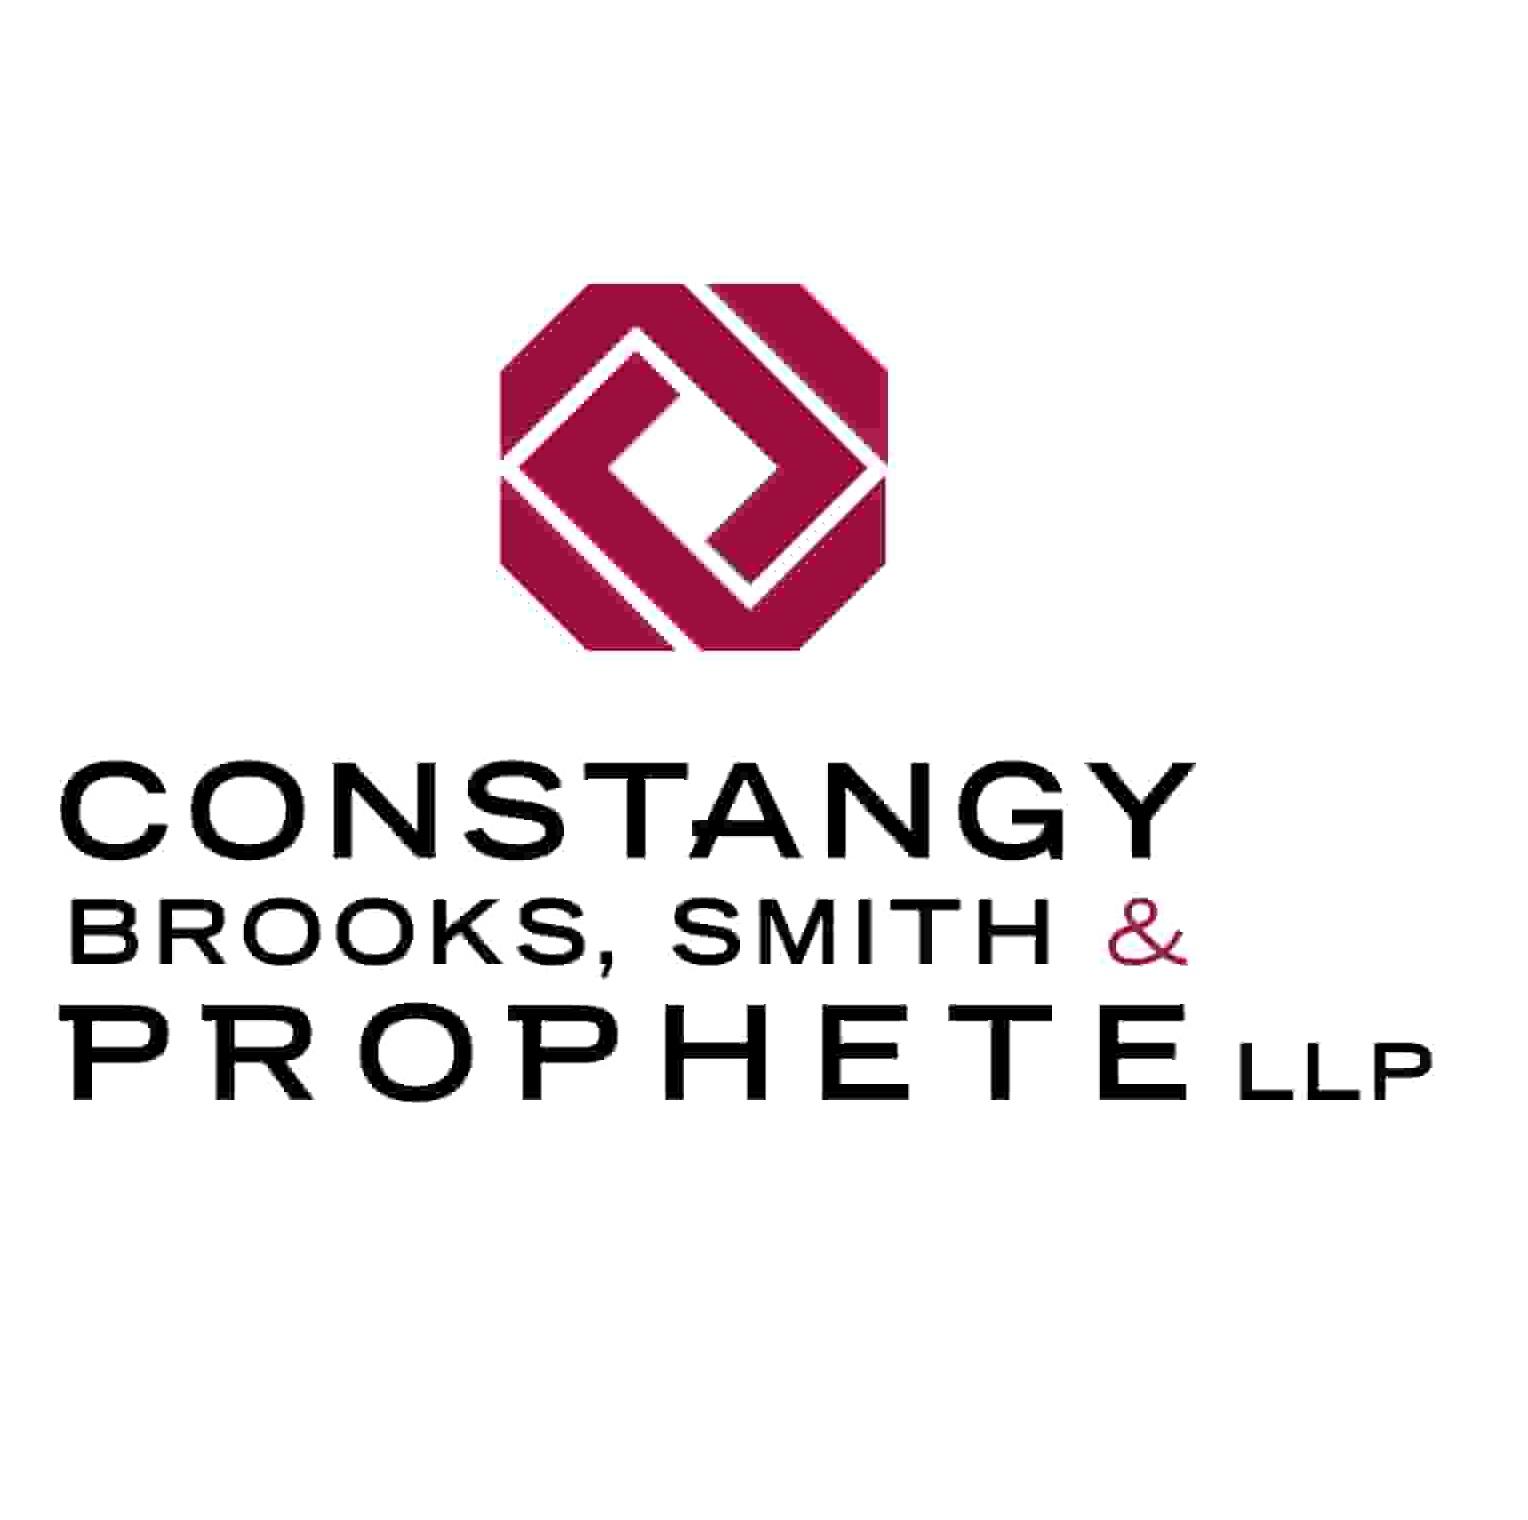 Constangy Brooks, Smith & Prophete LLP